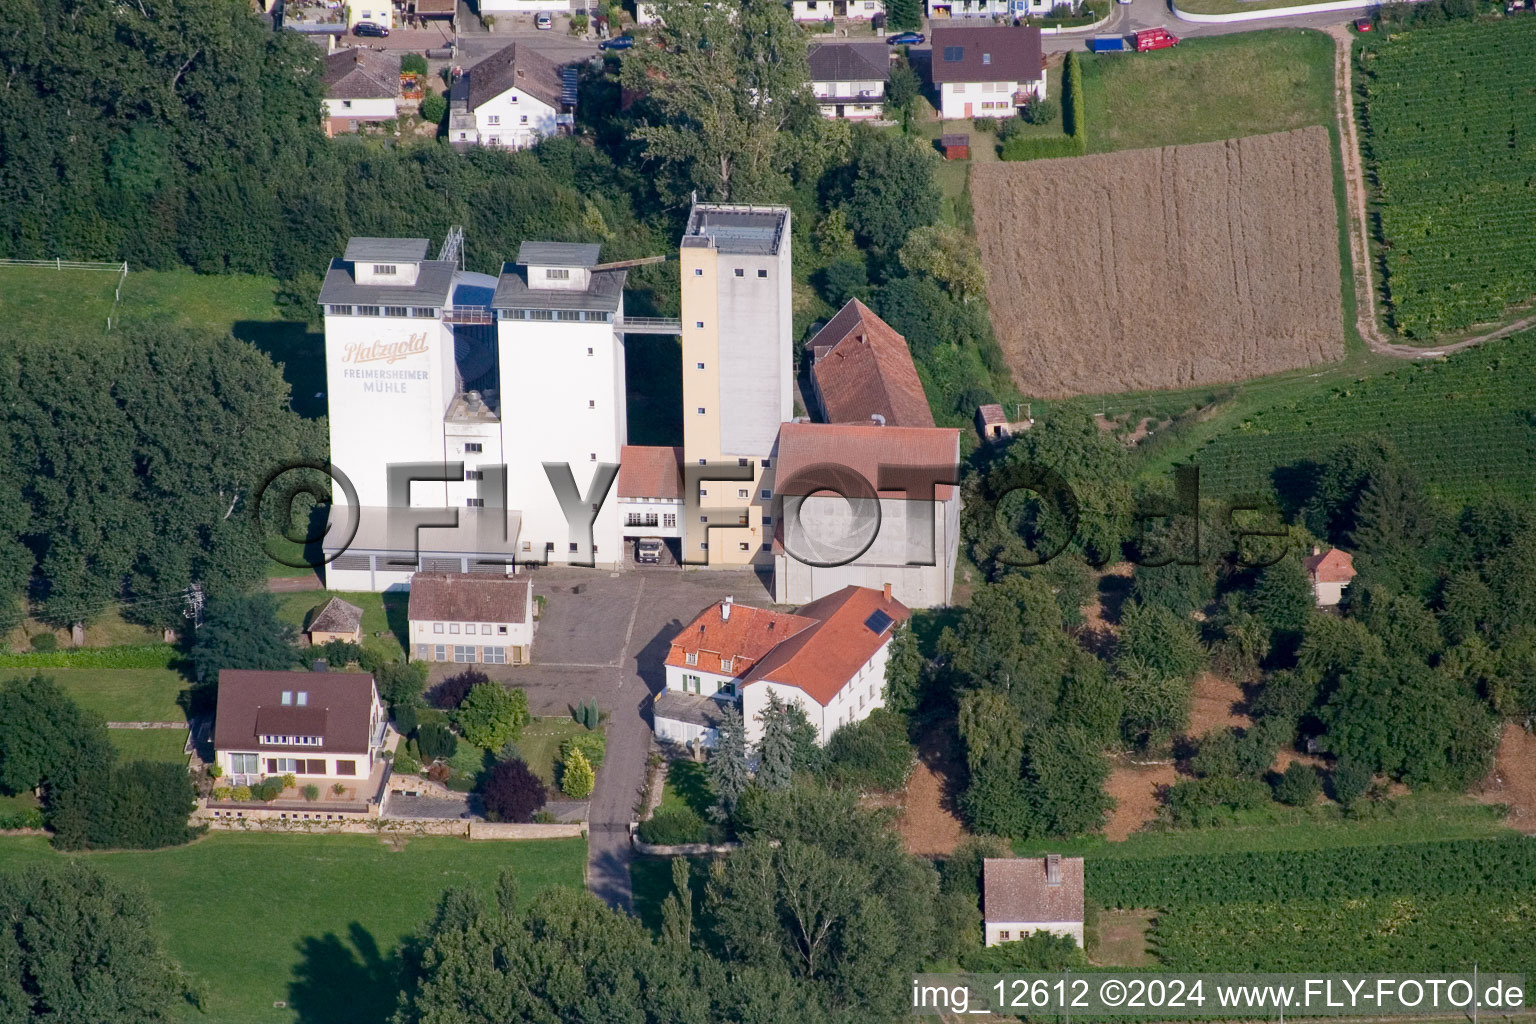 Vue aérienne de Bâtiments, silos et halls de production sur le site de l'usine Cornexo GmbH (Freimersheimer Maismühle) (Palatinat) à Freimersheim dans le département Rhénanie-Palatinat, Allemagne